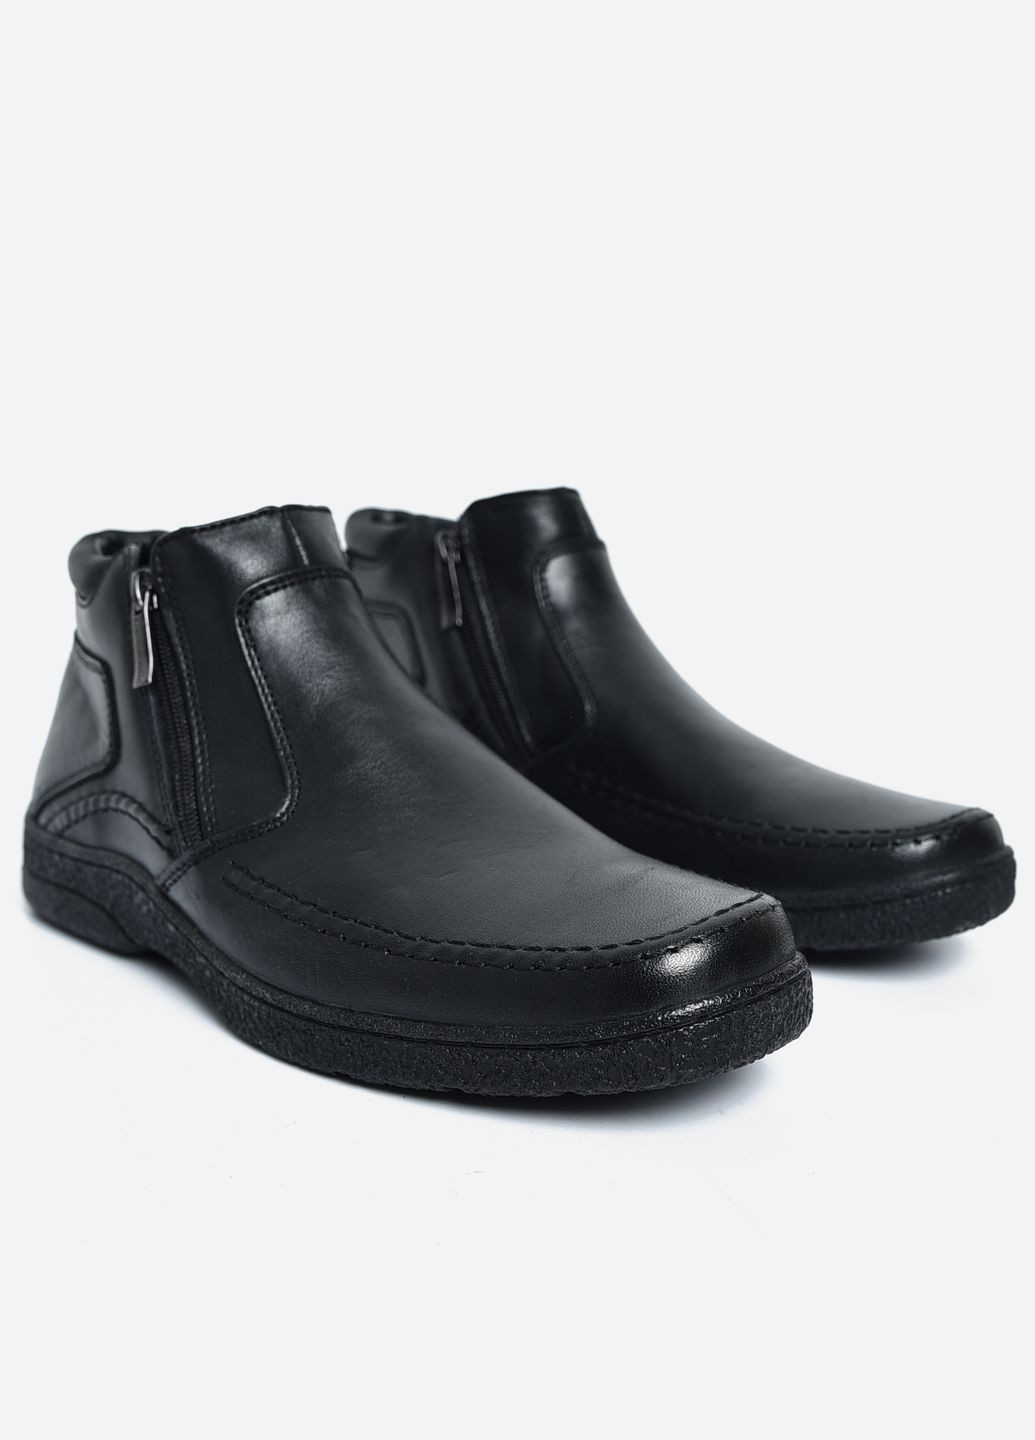 Черные зимние ботинки мужские зимние на меху черного цвета Let's Shop